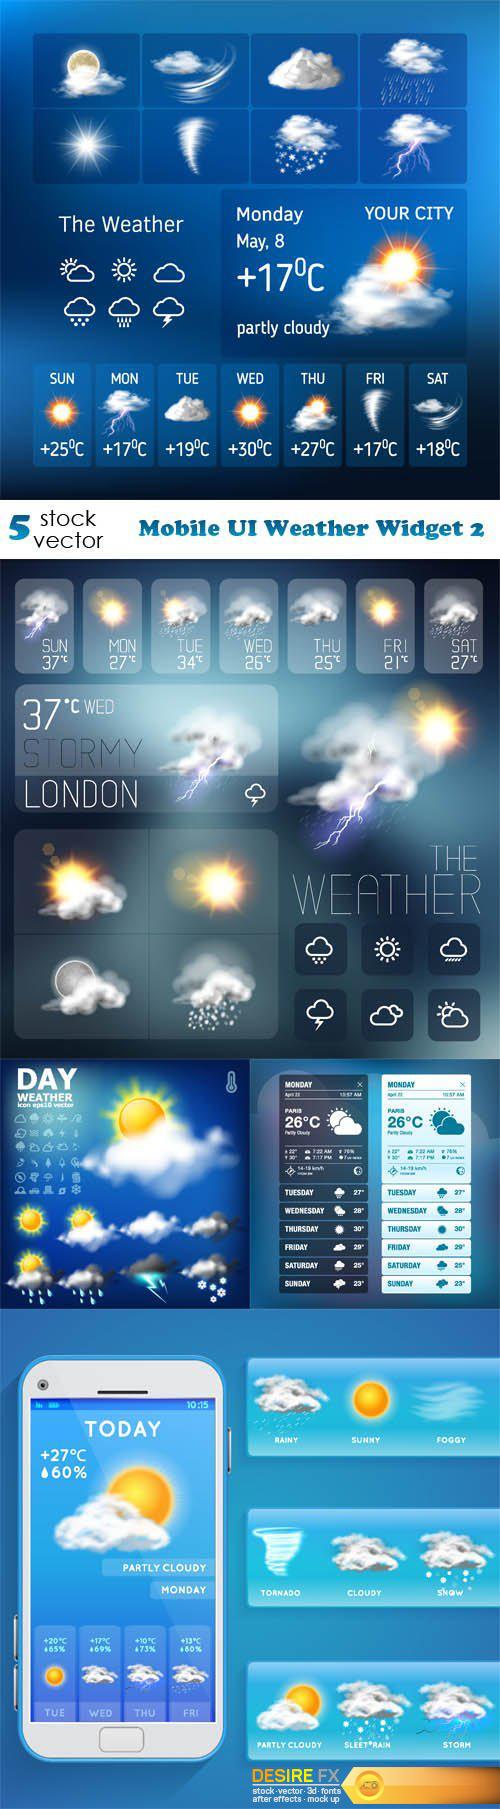 Vectors - Mobile UI Weather Widget 2